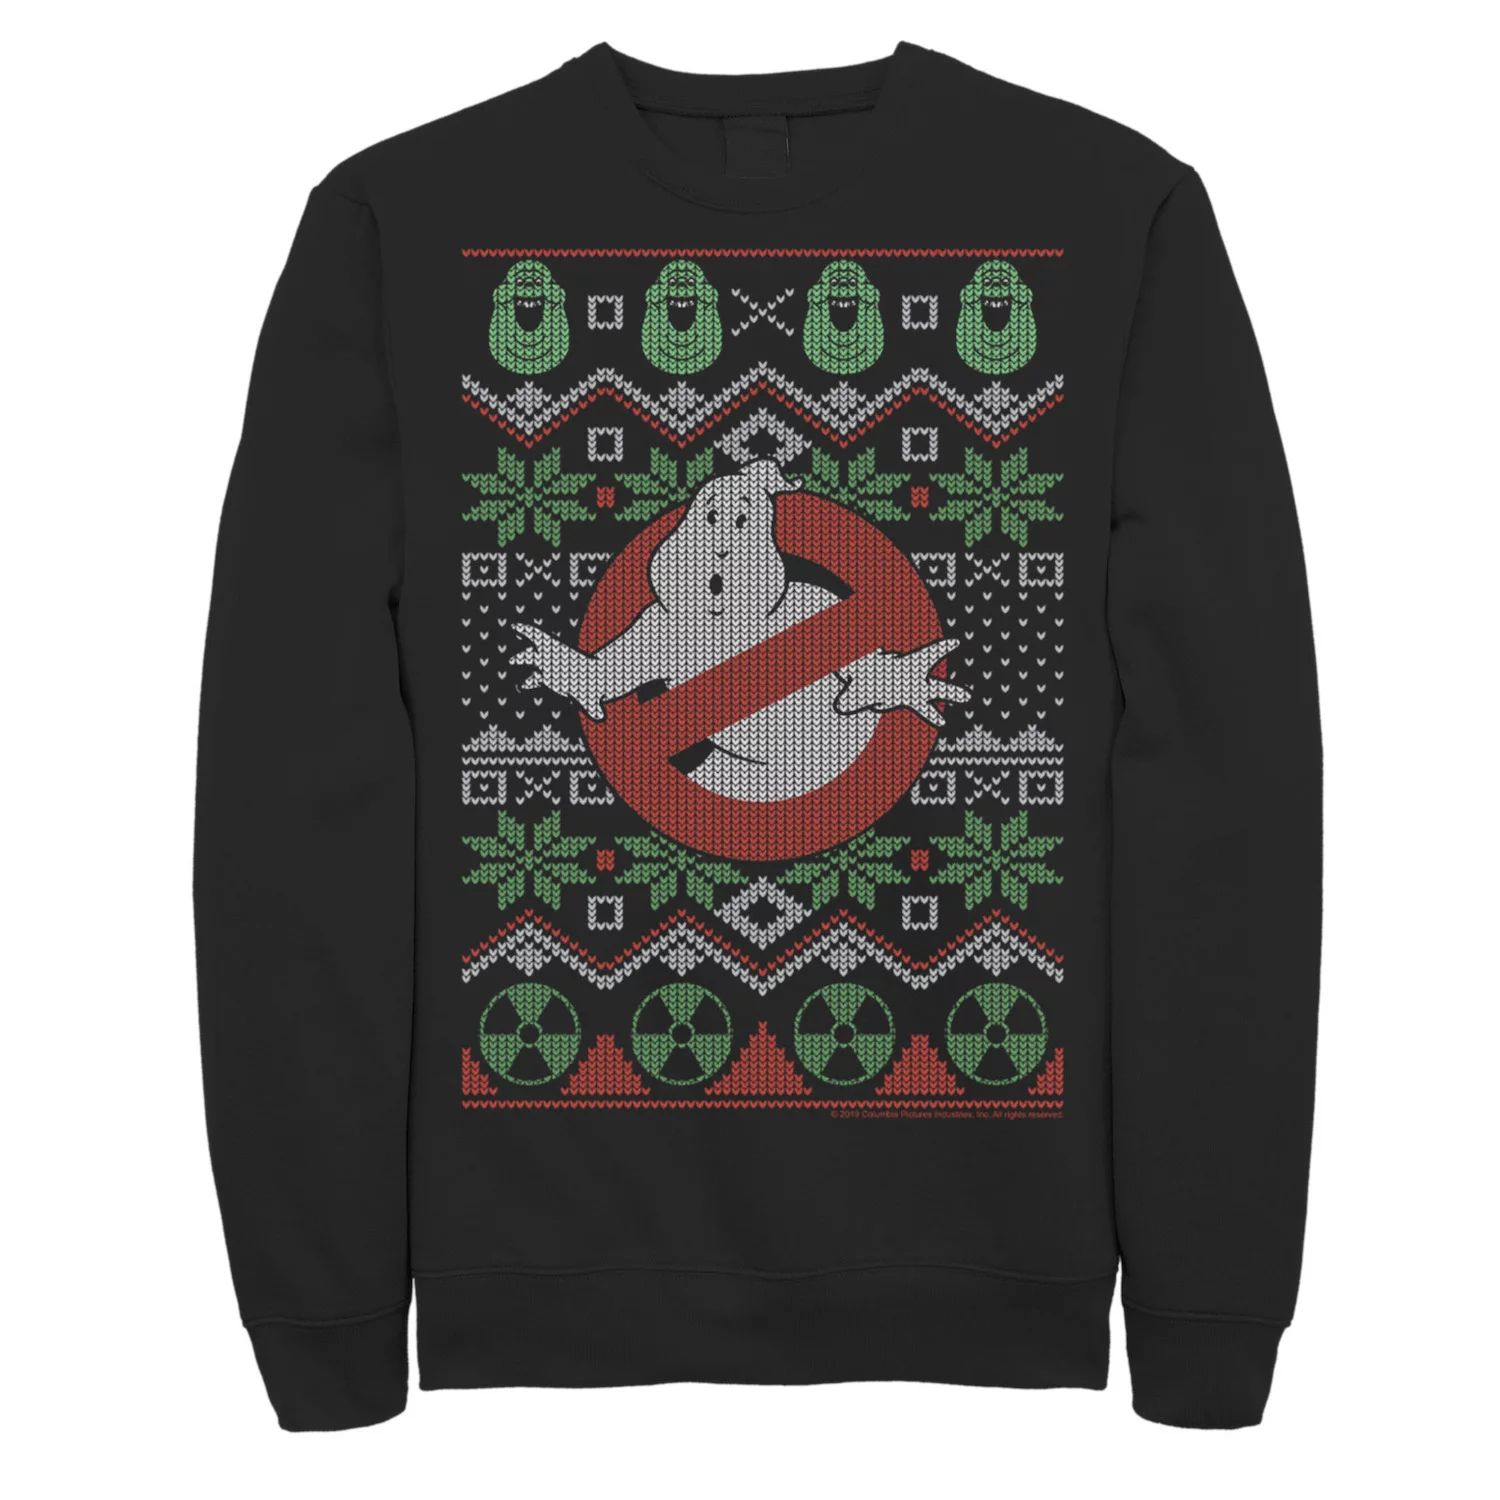 Мужской вязаный свитшот с оригинальным логотипом Ghostbusters, пуловер